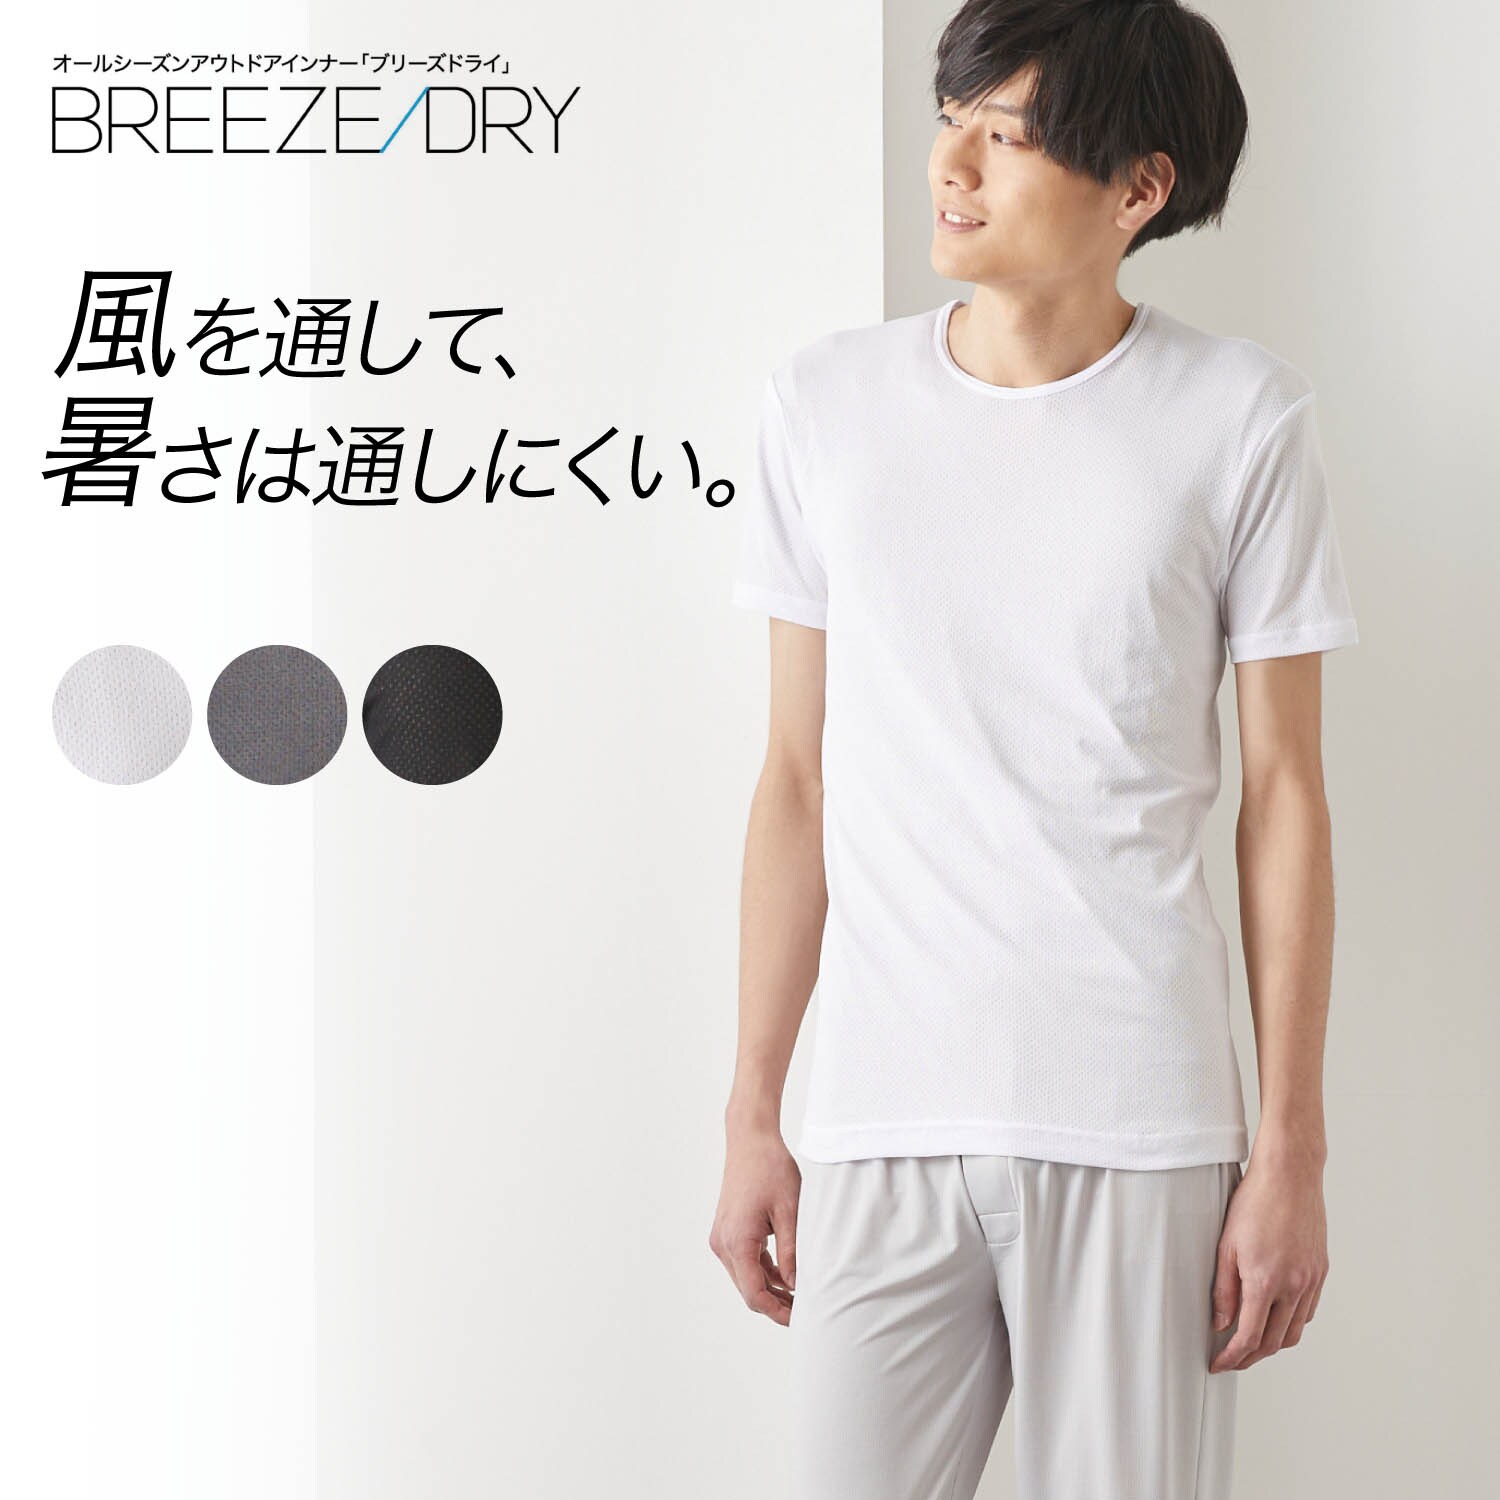 【ベルメゾン】【5月8日までまとめ買いでお得】 【メンズ】BREEZE DRY 半袖丸首シャツ